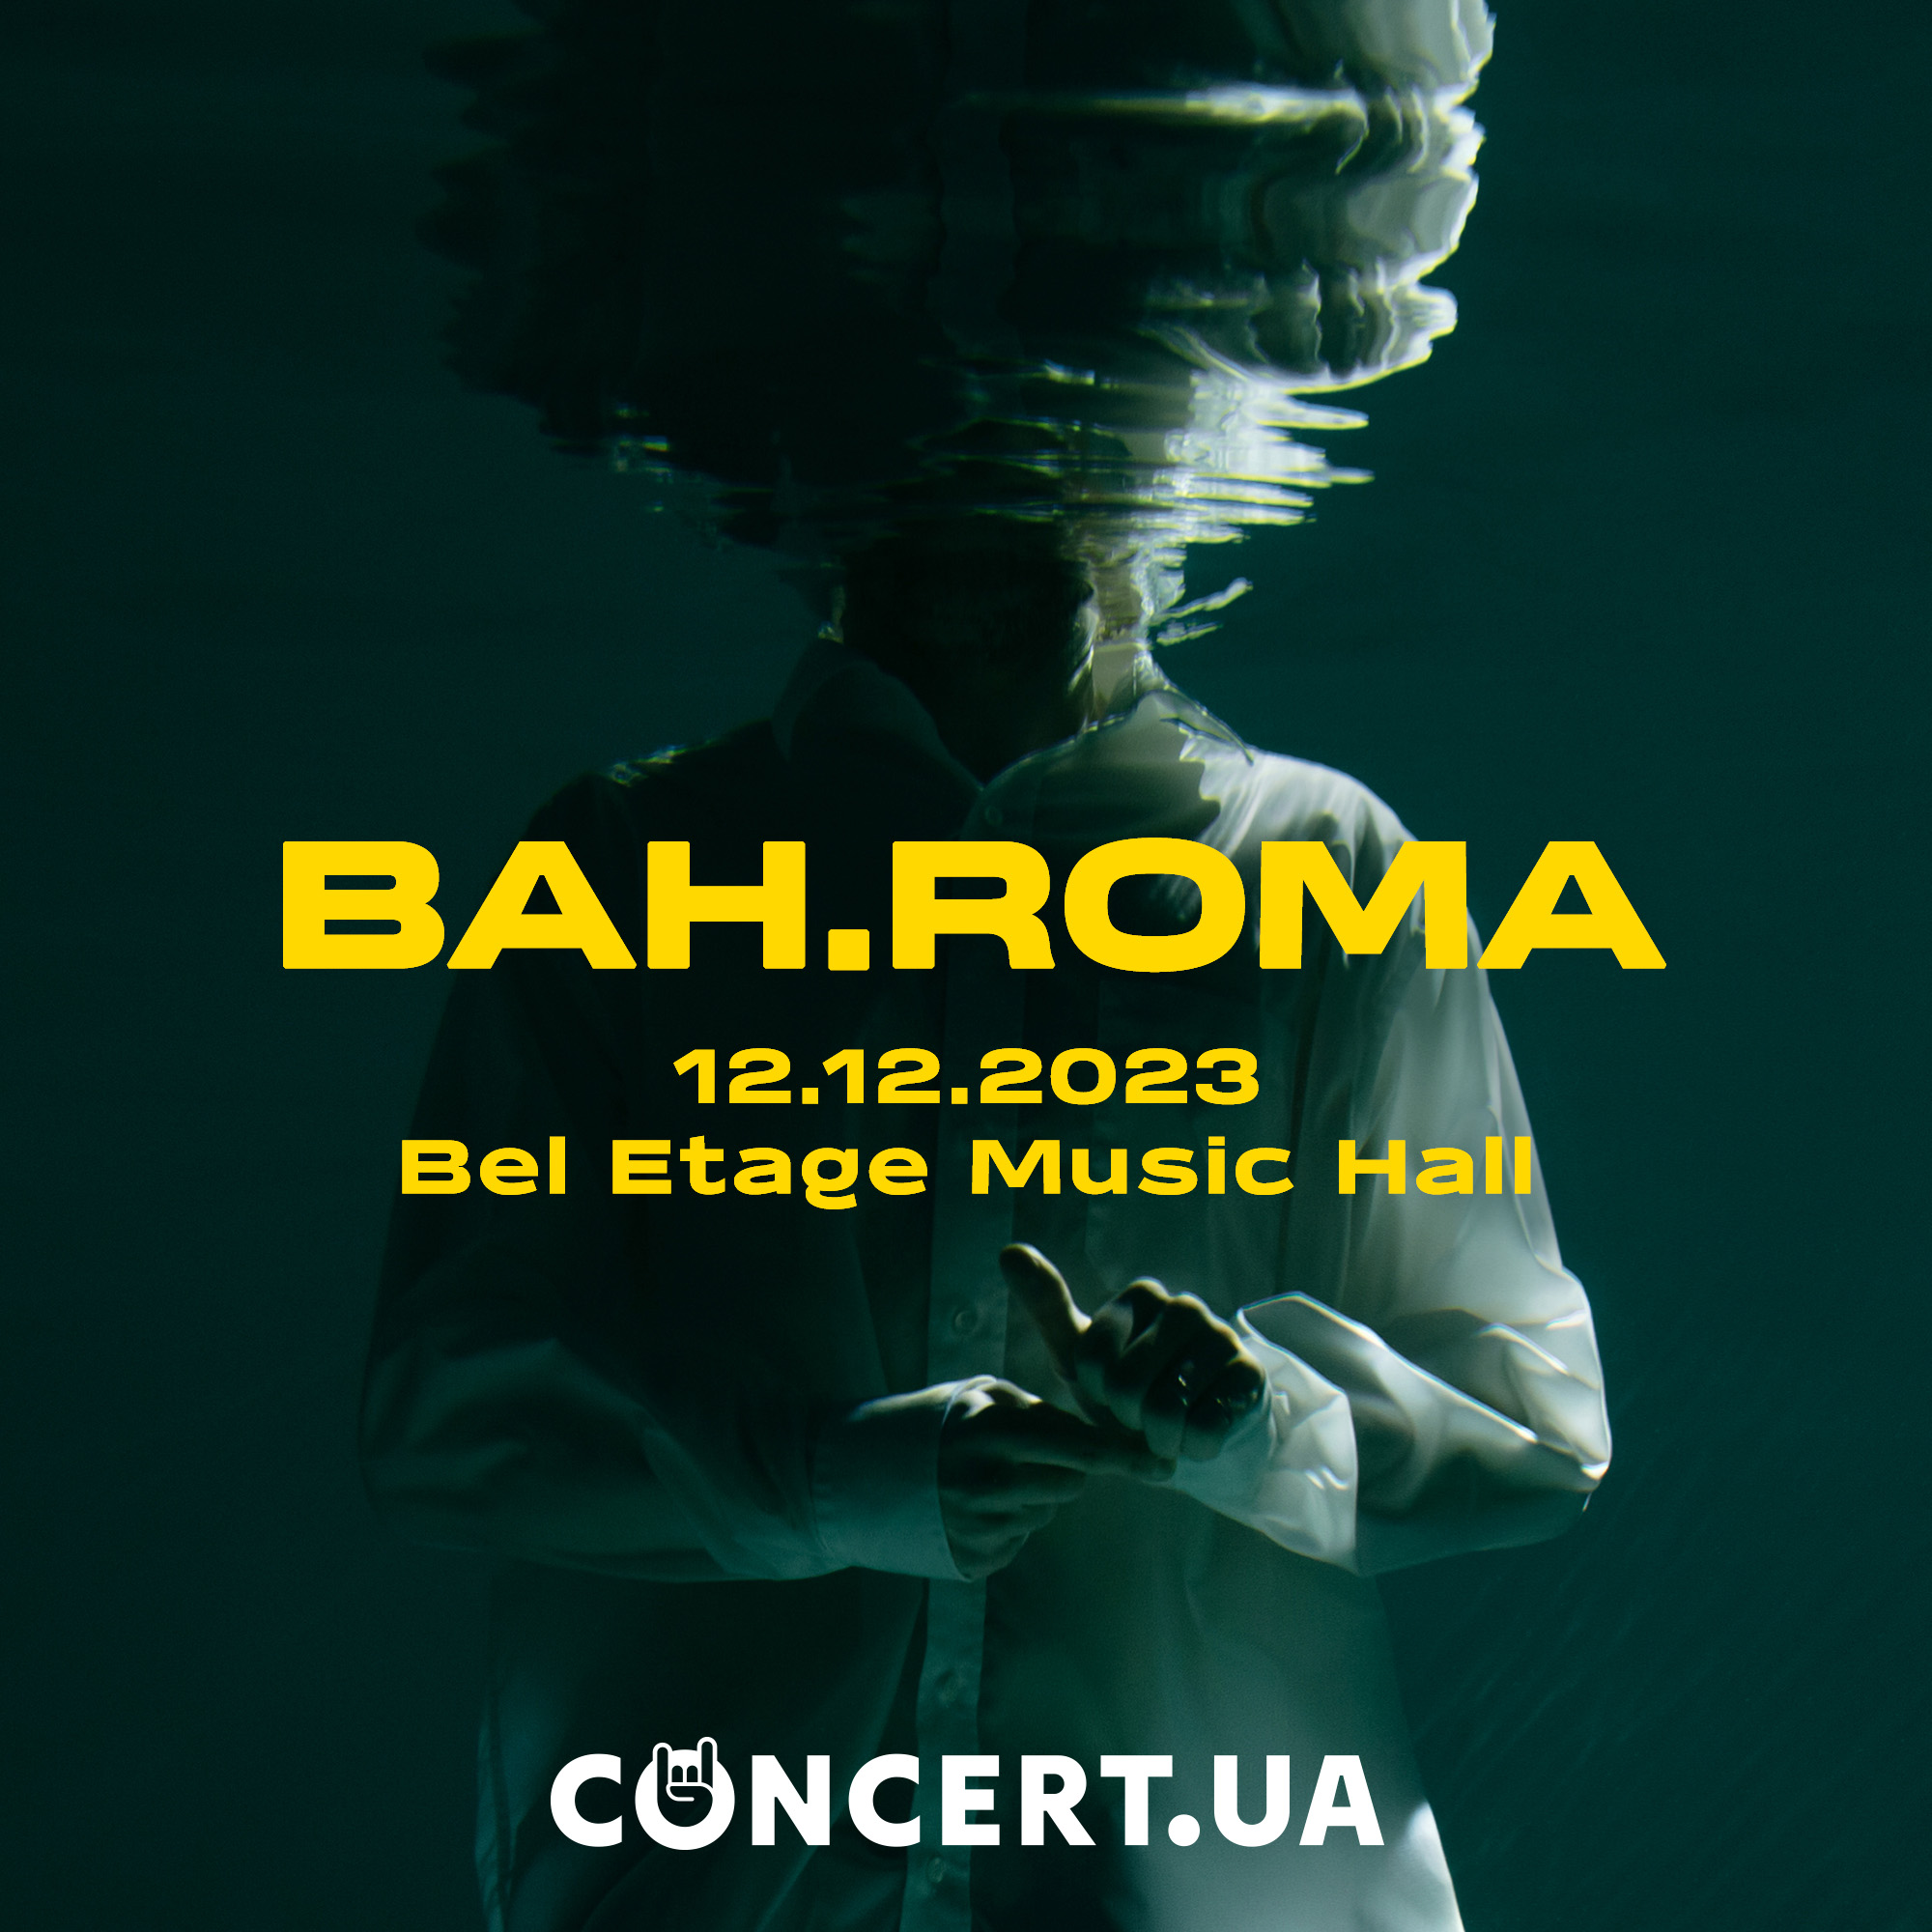 BAH.ROMA у Bel Etage Music Hall: музика душі та вечір допомоги дітям